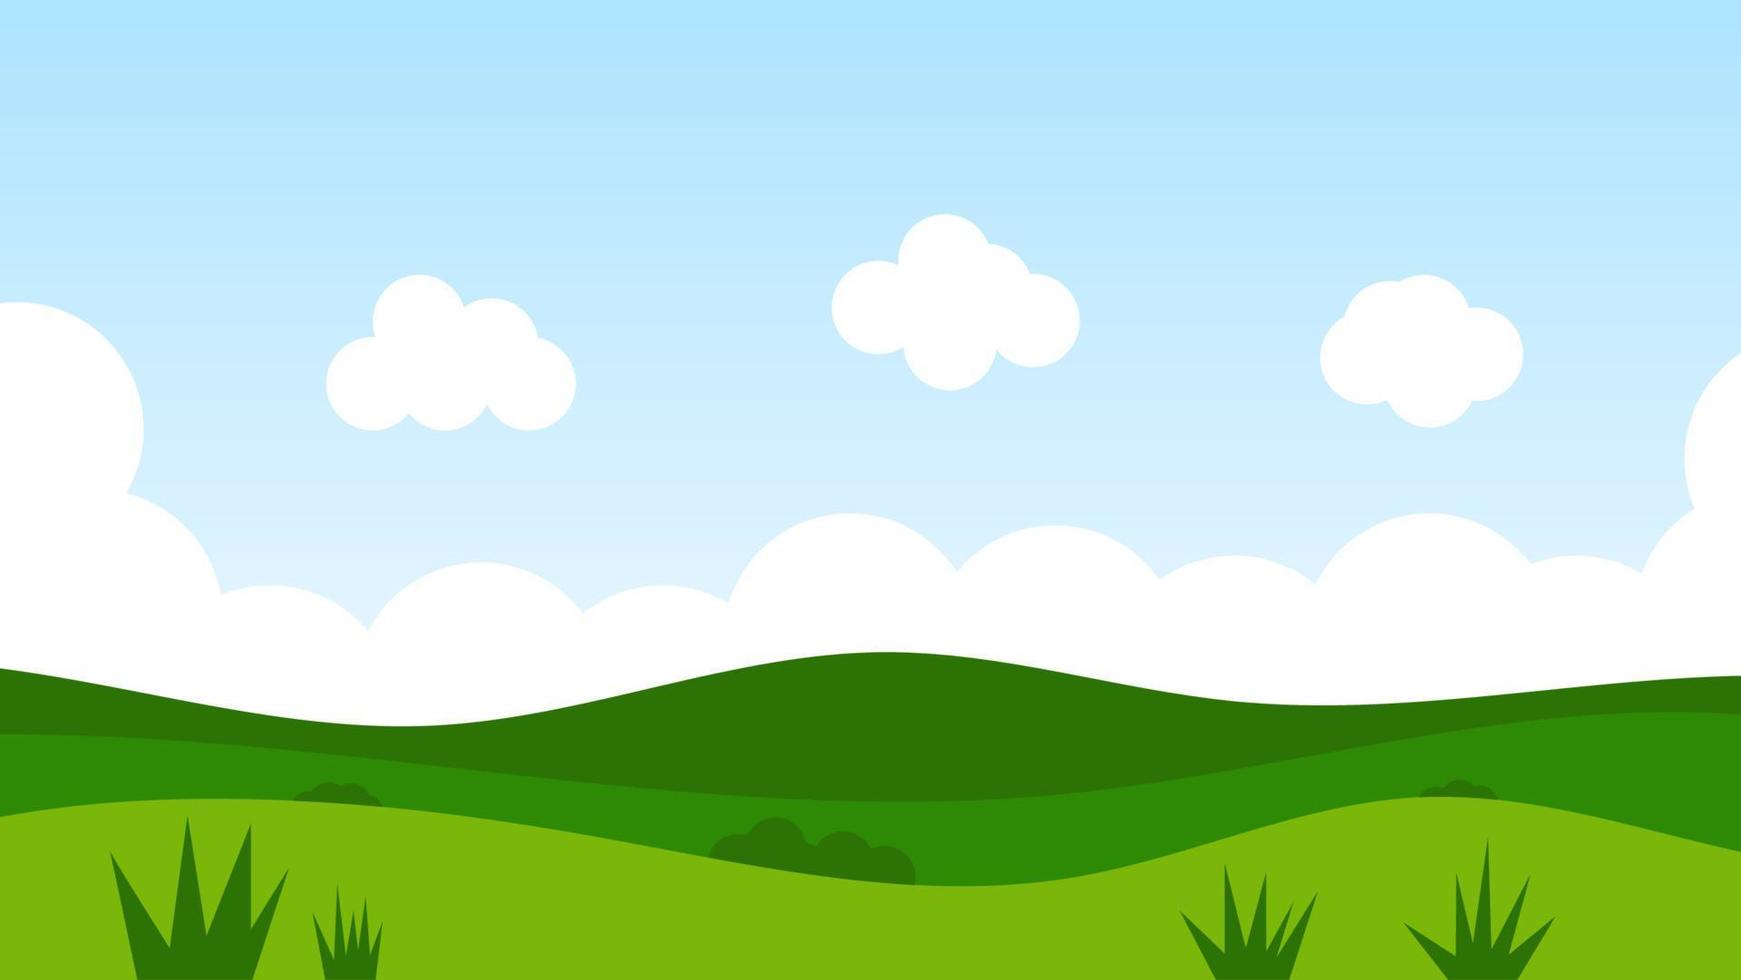 landschapsbeeldverhaalscène met groene bomen op heuvels en witte pluizige wolk in de zomer blauwe hemelachtergrond vector